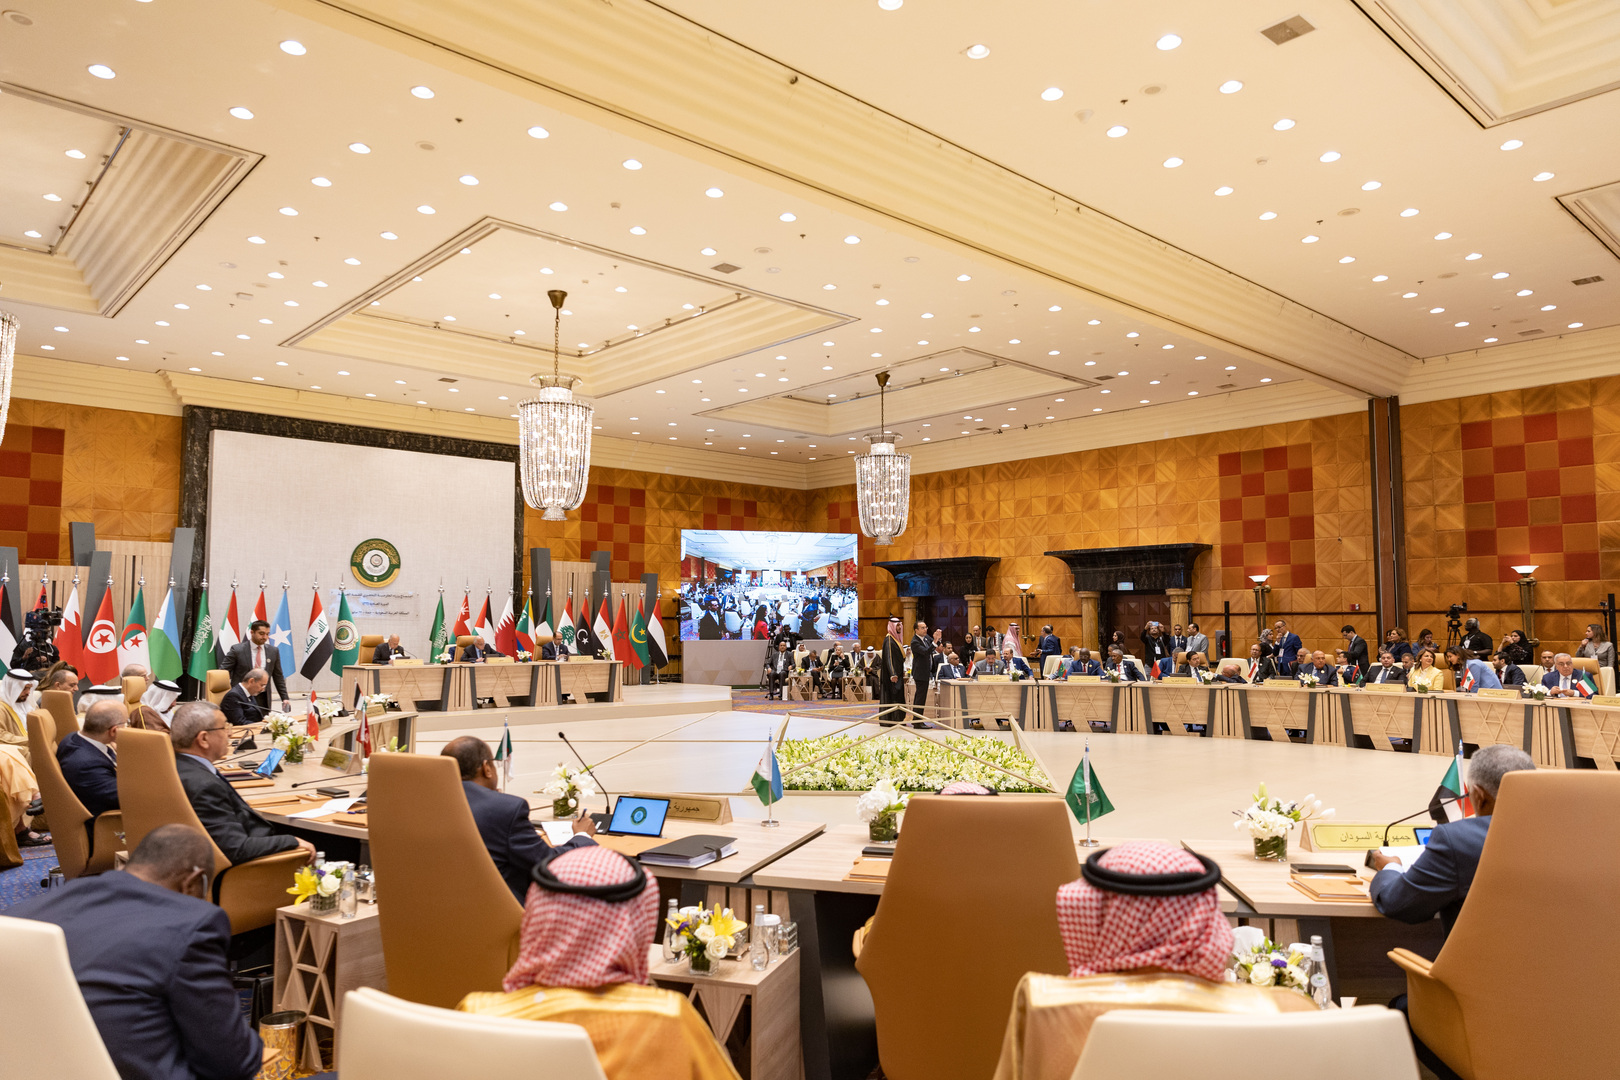 وصول نائب رئيس الإمارات منصور بن زايد آل نهيان إلى جدة للمشاركة في القمة العربية (فيديو)